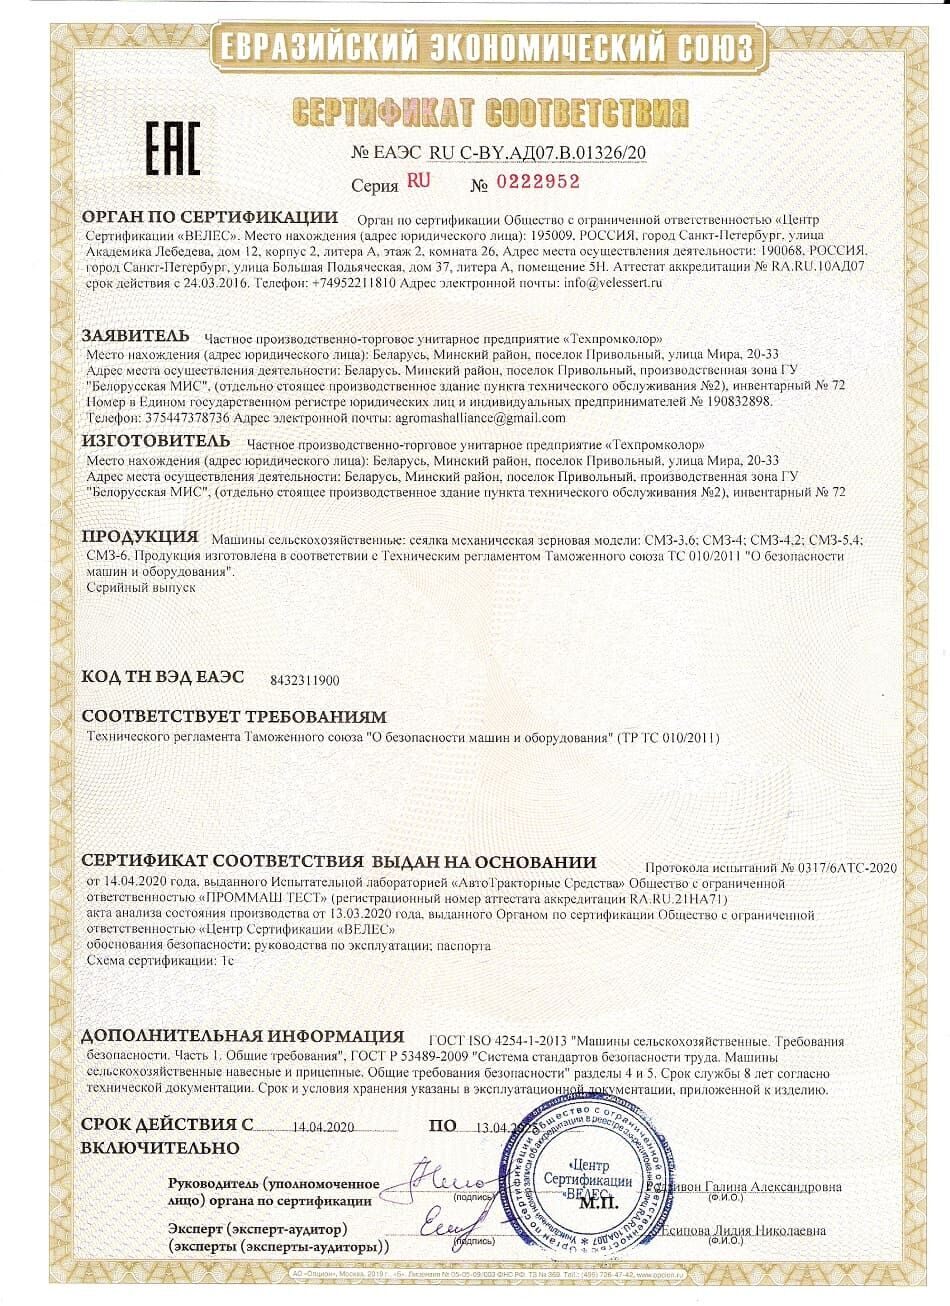 Сертификат на сеялки СМЗ